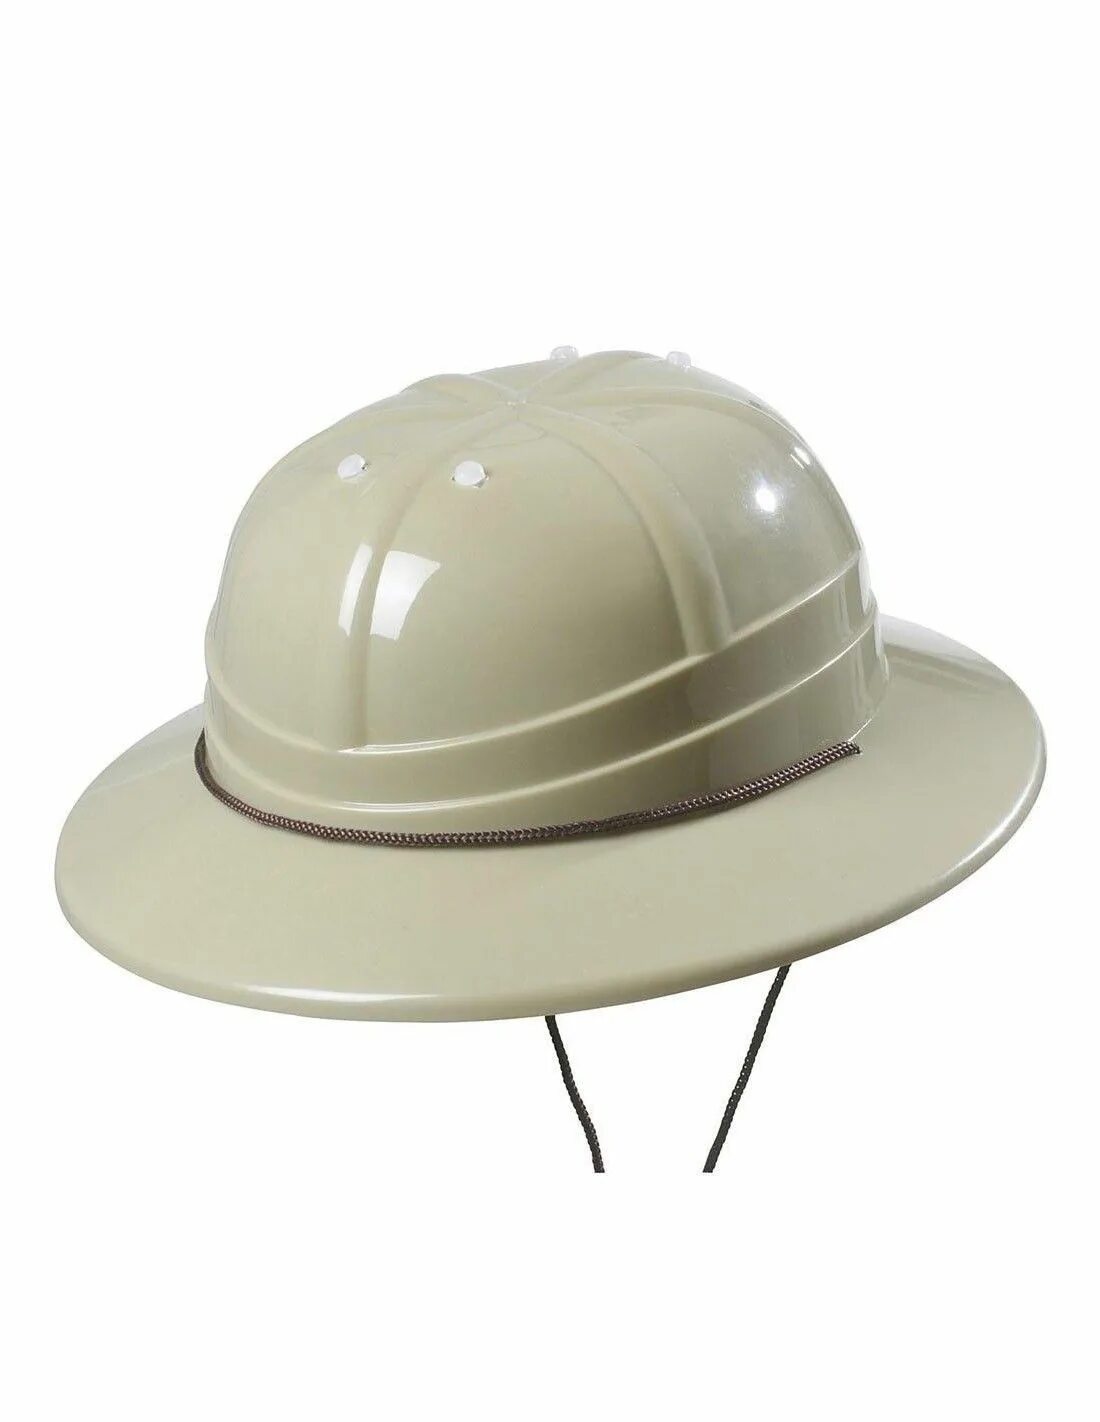 Купить каску шляпу строительную. Шляпы сафари Хатс. Шляпка-каска. Каска шляпа. Каска женская в виде шляпы.